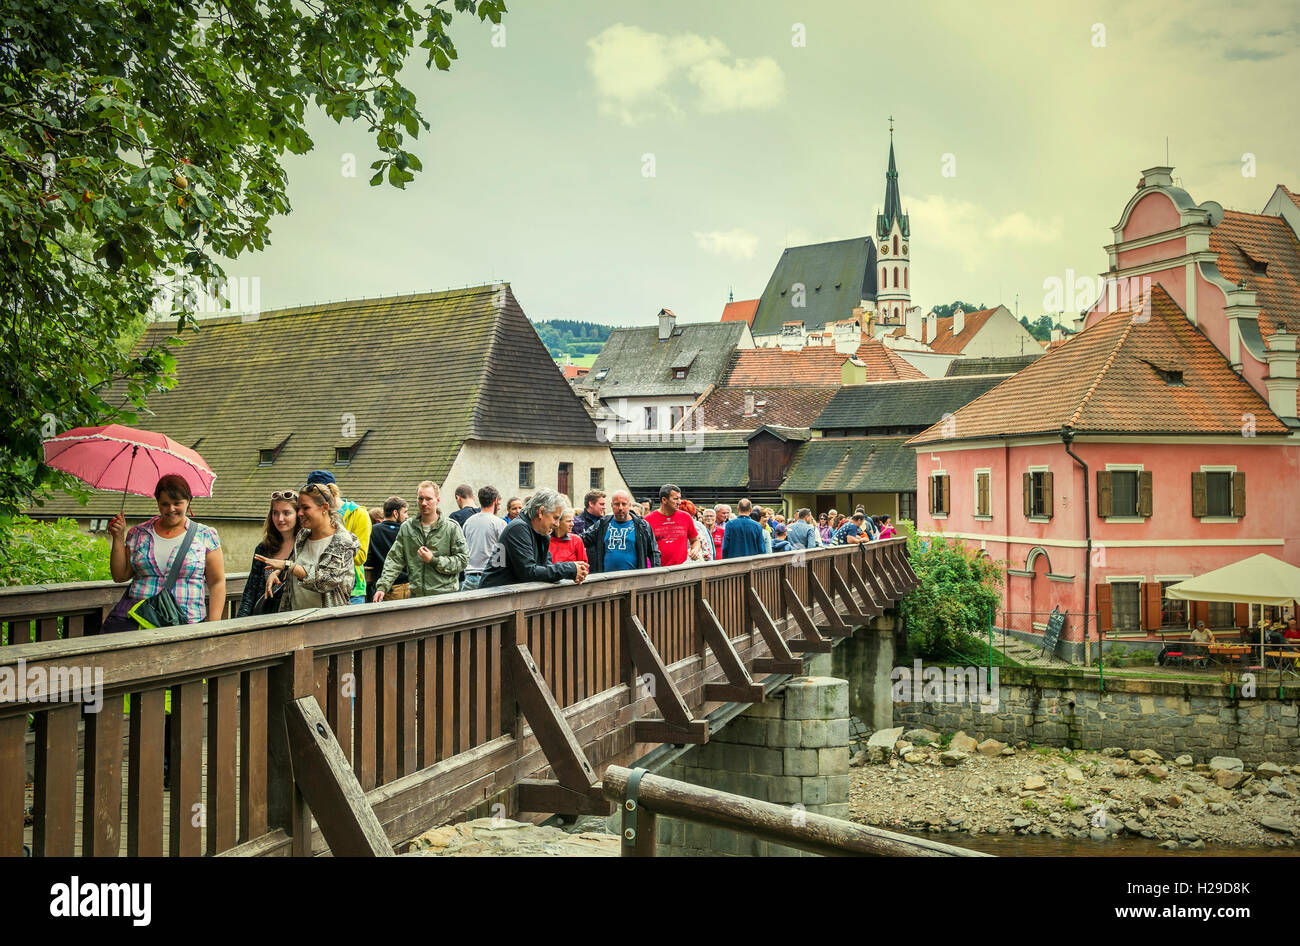 Cesky Krumlov, erstaunlich, einzigartige mittelalterliche Stadt in Böhmen, Tschechien. Masse der Touristen auf der Fußgängerbrücke. Stockfoto